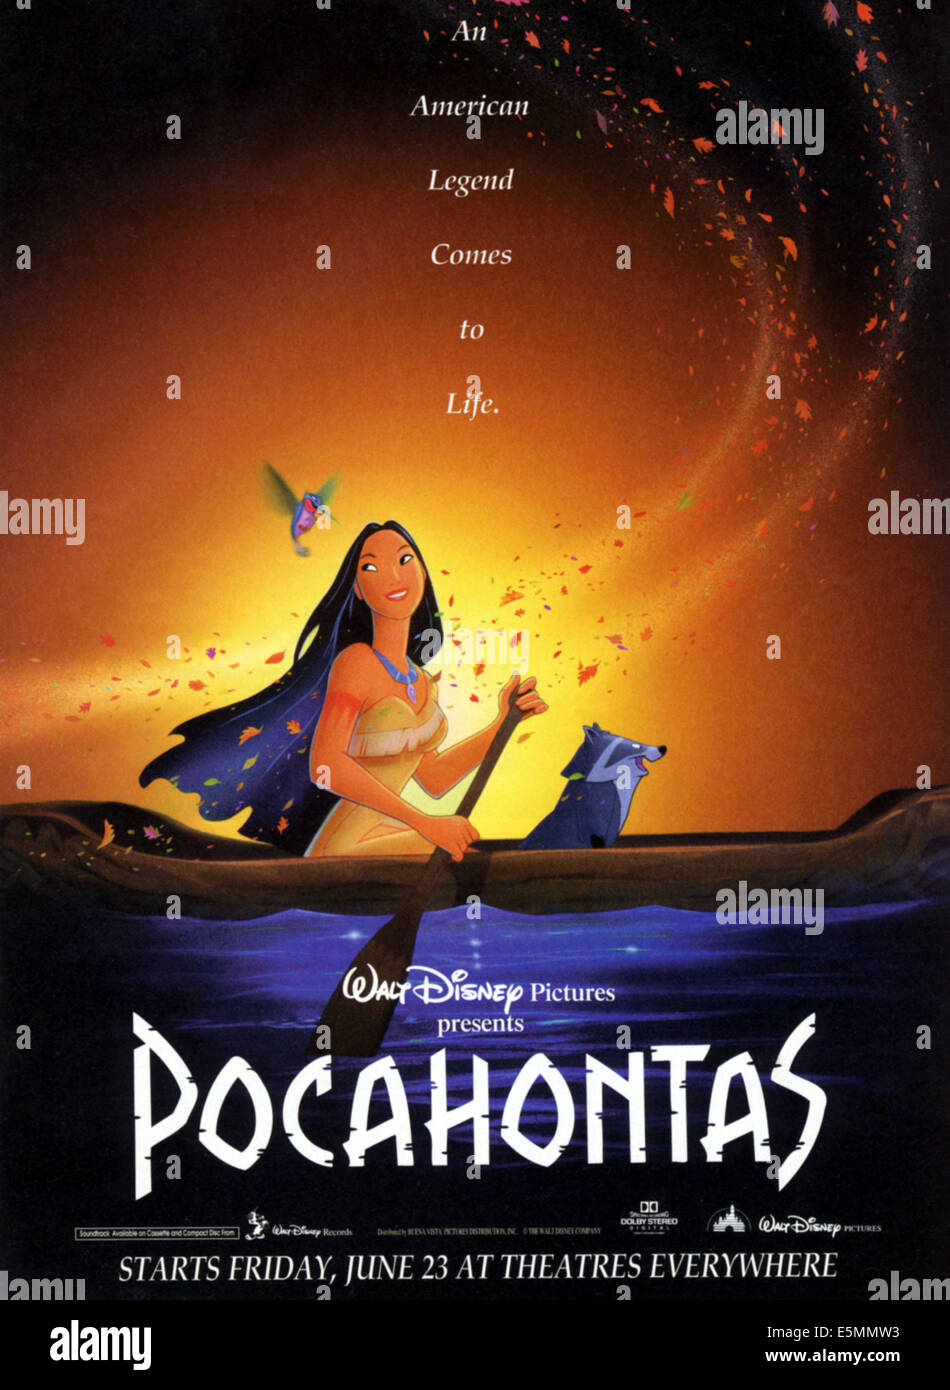 POCAHONTAS, l-r: Flit, Pocahontas, Meeko on poster art, 1995, ©Walt Disney Pictures/courtesy Everett Collection Stock Photo